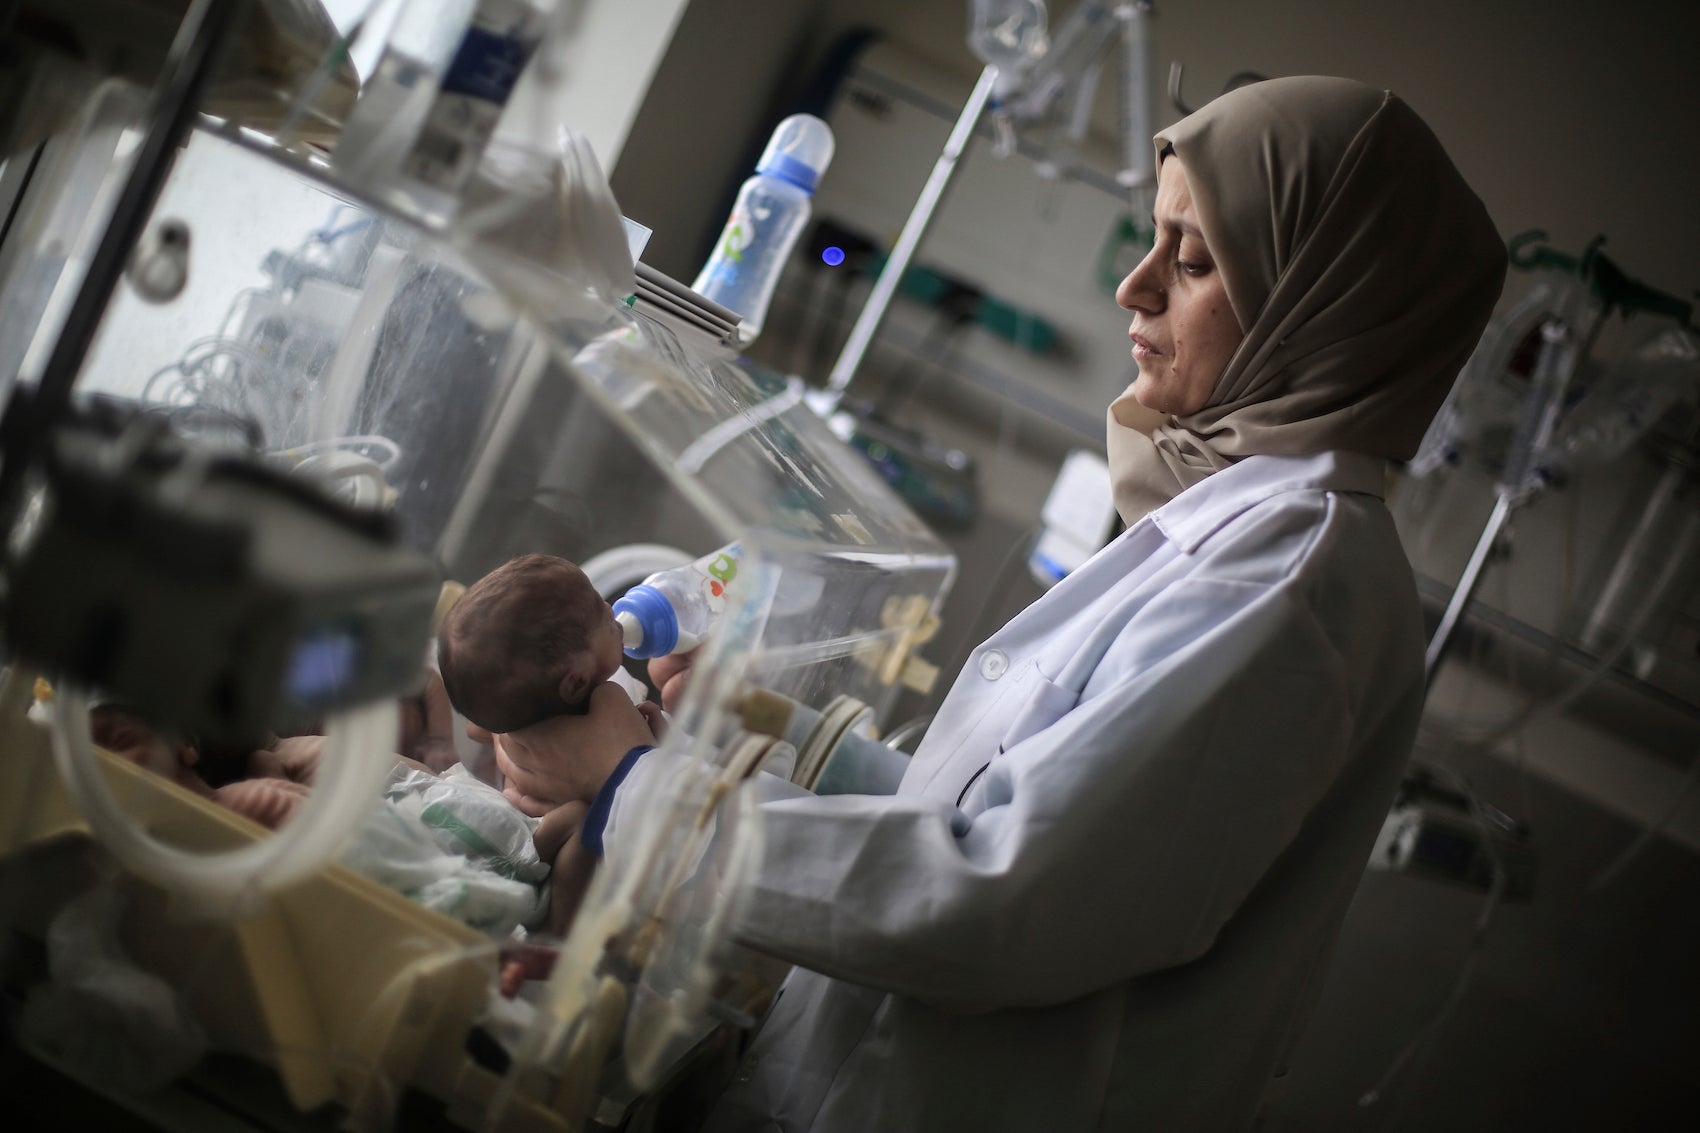 רופאה פלסטינית בבית חולים ברפיח בדרום רצועת עזה מכינה פג להעברה למצרים לקבלת טיפול רפואי הולם, 20 בנובמבר 2023.